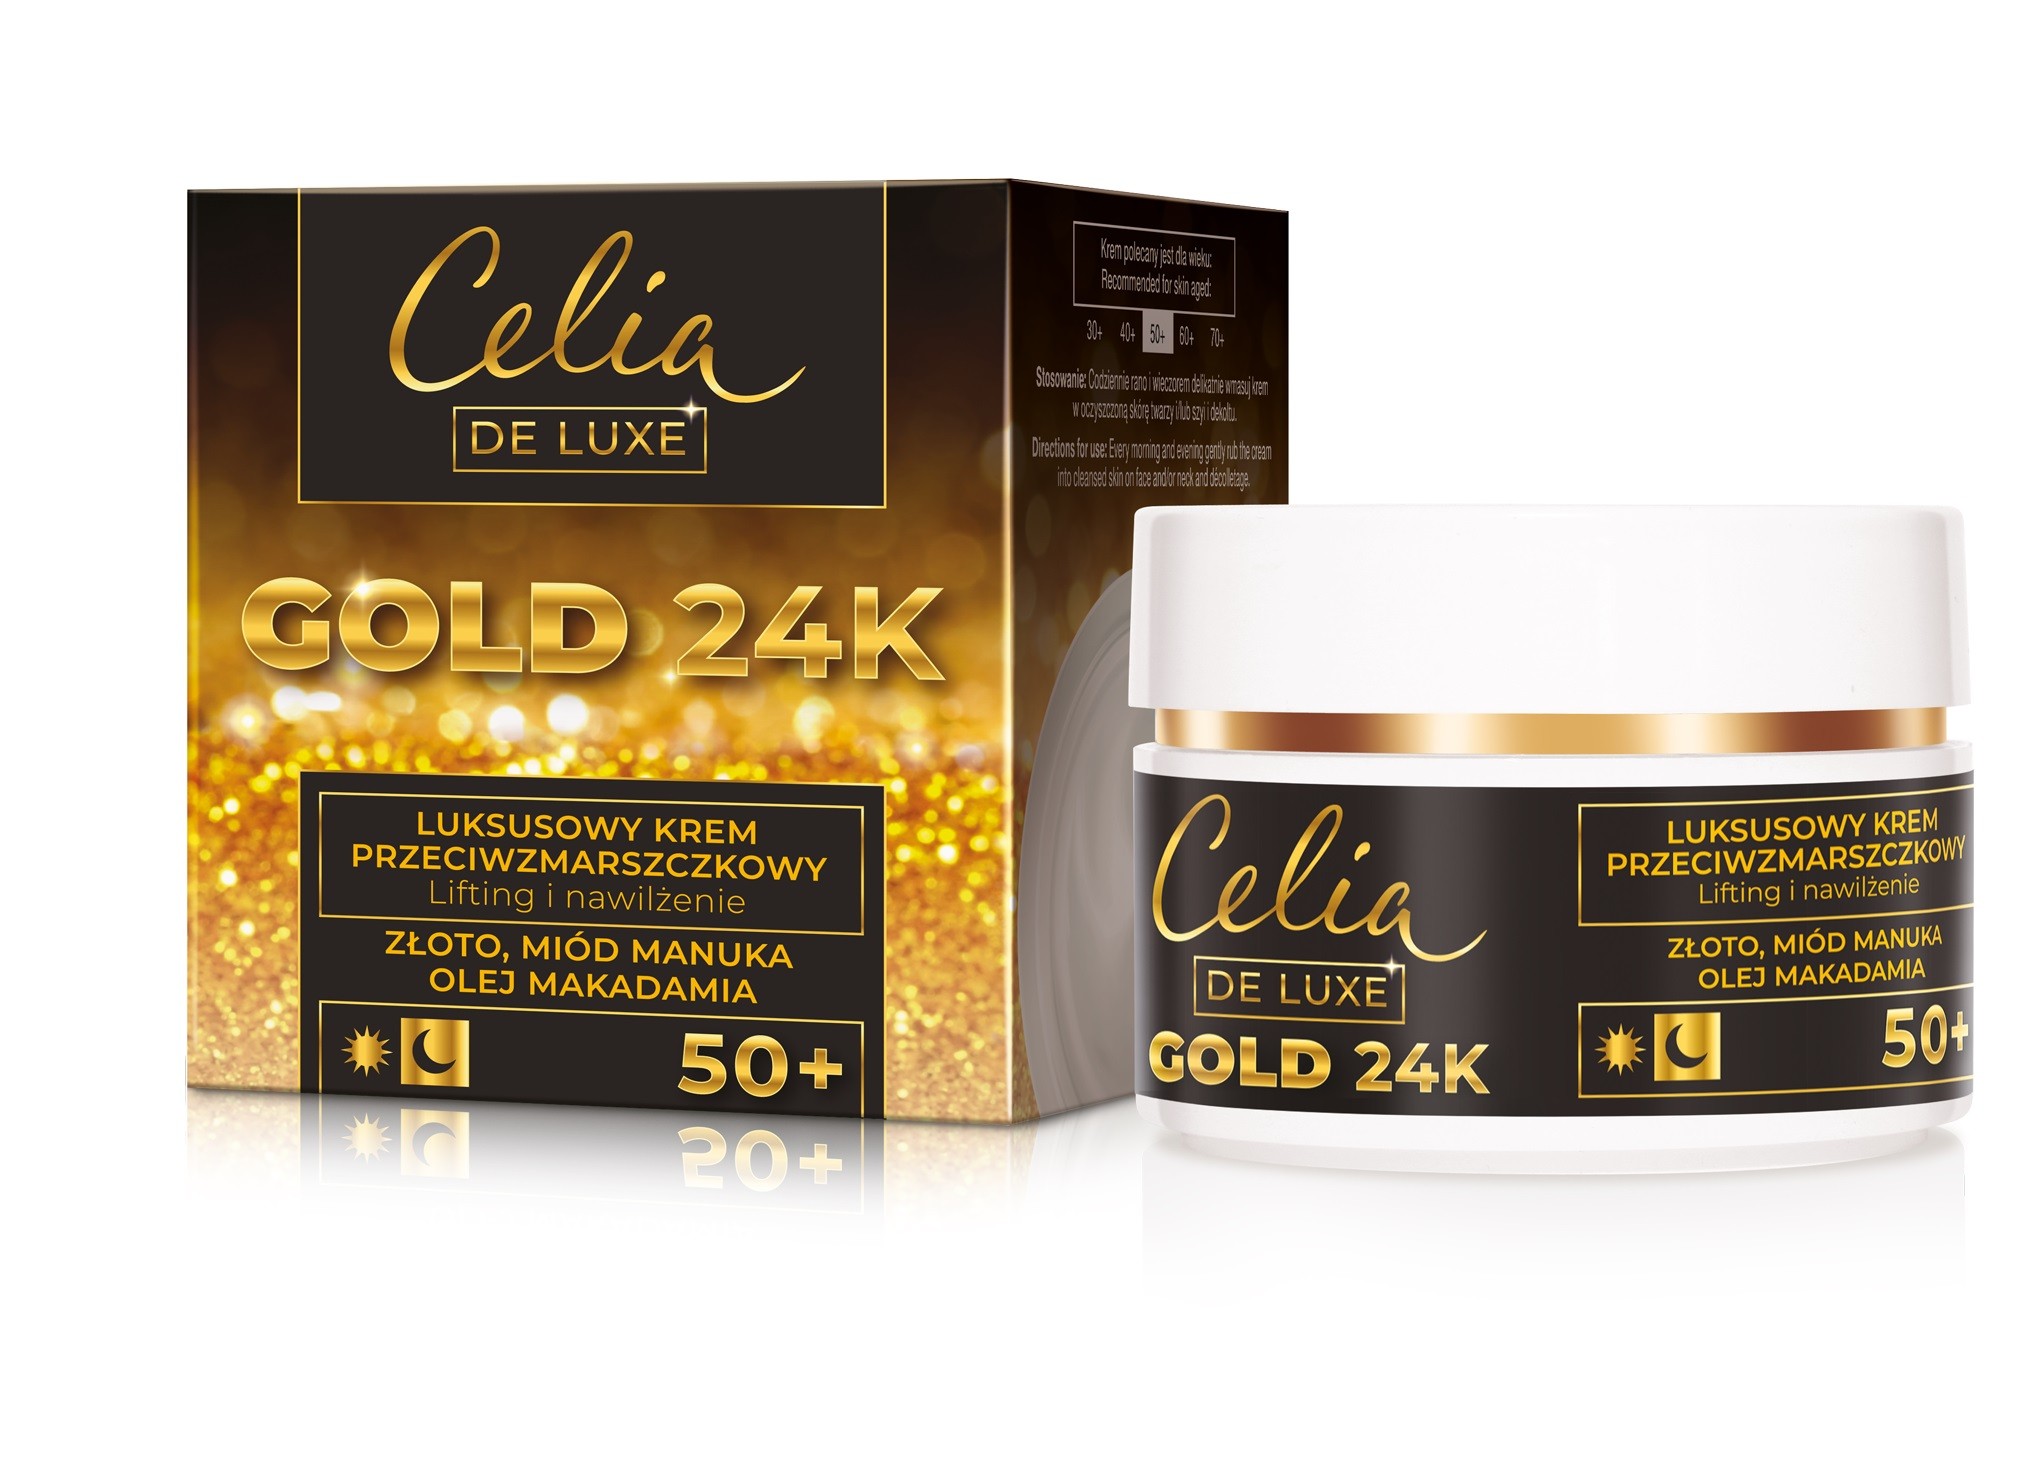 Celia Gold 24K Luksusowy Krem przeciwzmarszczkowy 50+ - lifting i nawilżenie 50ml